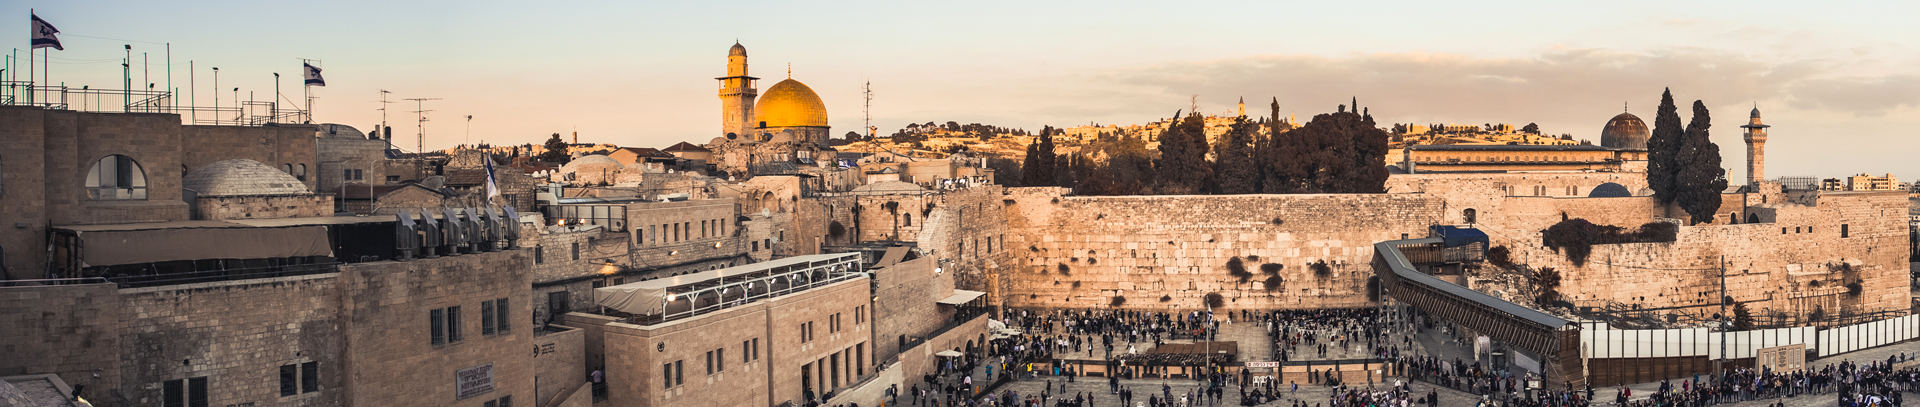 Protestant Group Tours to Israel - Jerusalem